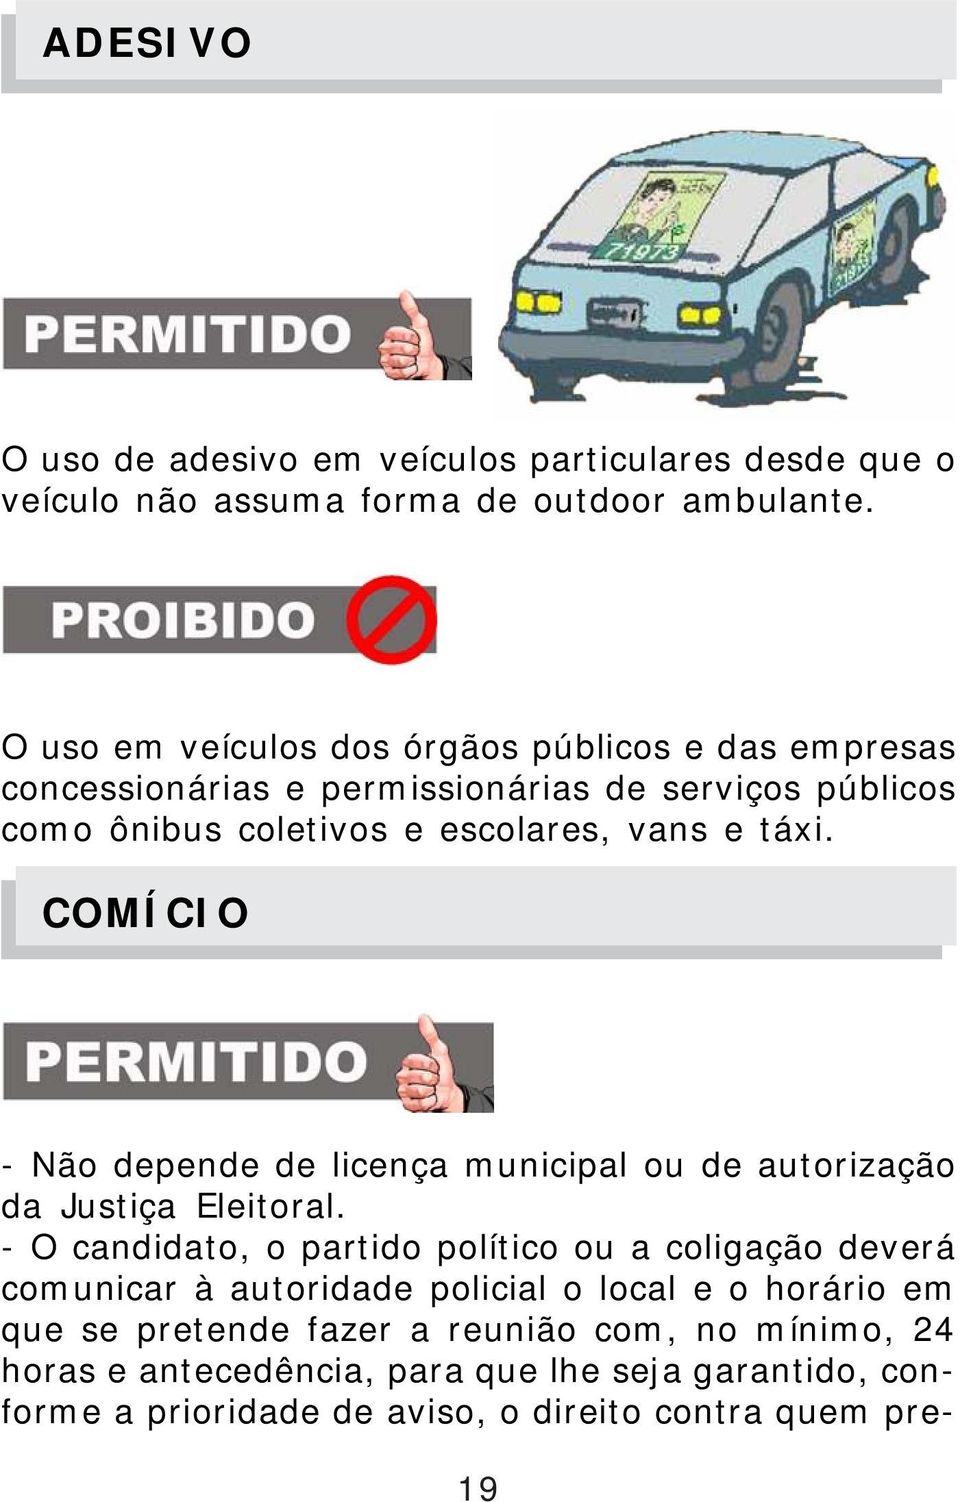 táxi. COMÍCIO PERMITIDO - Não depende de licença municipal ou de autorização da Justiça Eleitoral.